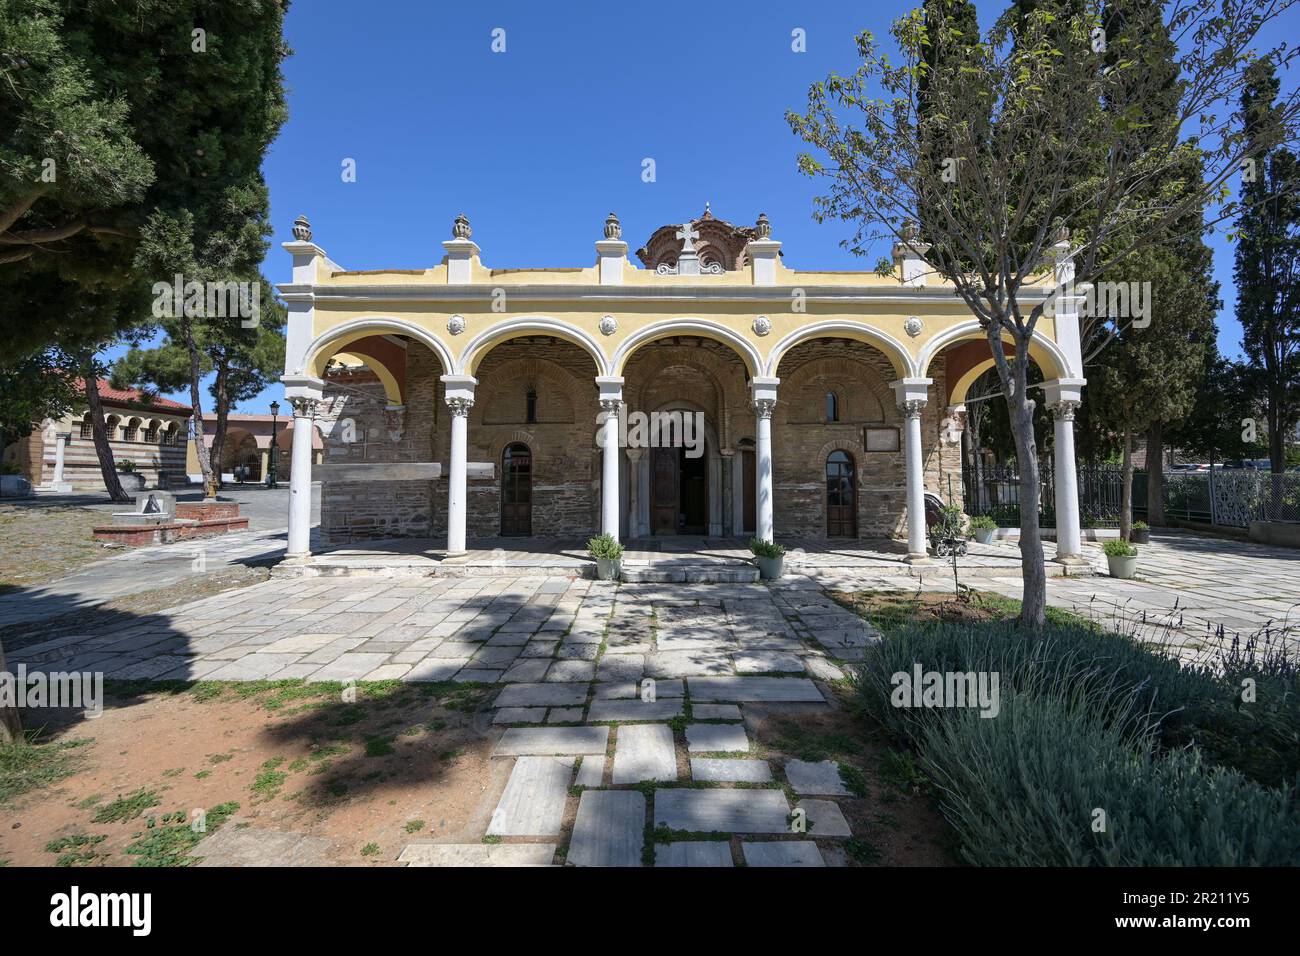 Monastère de Vlatades, temple byzantin historique dans la ville haute de Thessalonique, Grèce, site classé au patrimoine mondial de l'UNESCO depuis 1988, site touristique et historique d Banque D'Images